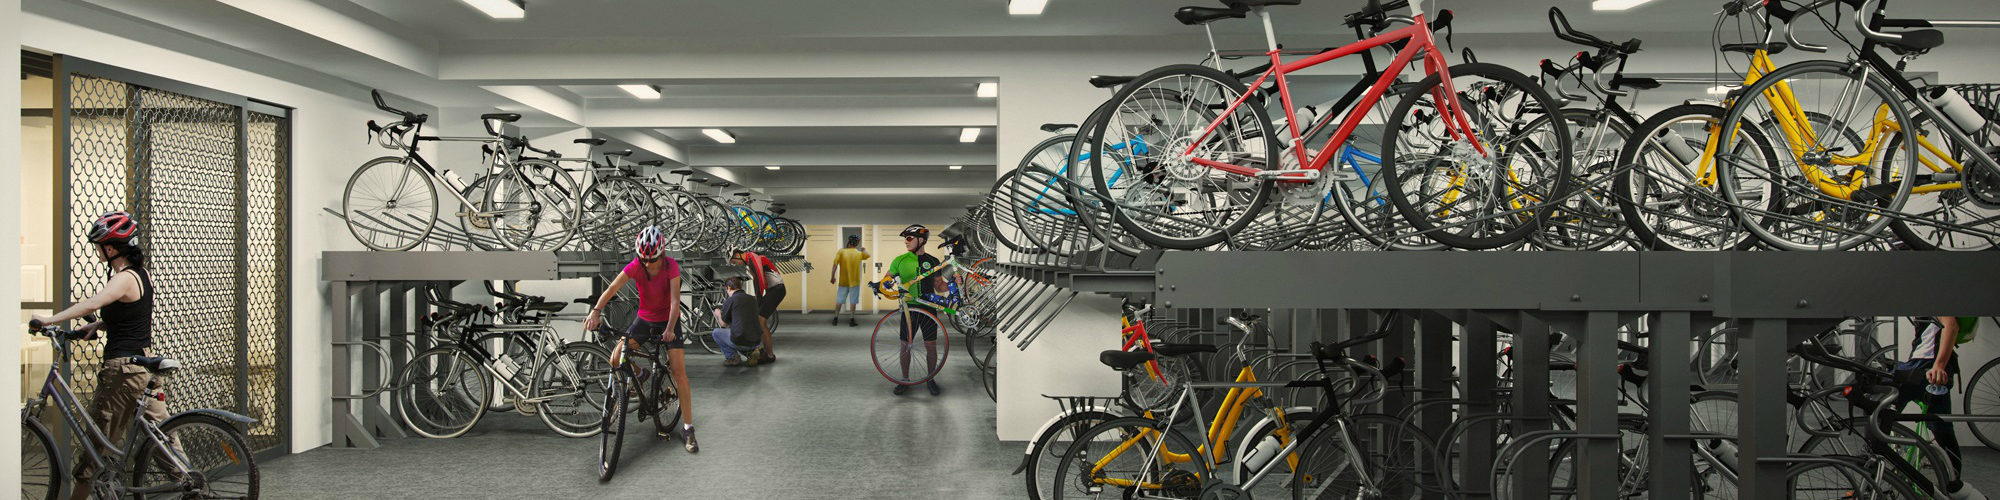 Westwood Residences EC - Secured Covered Bike Garage